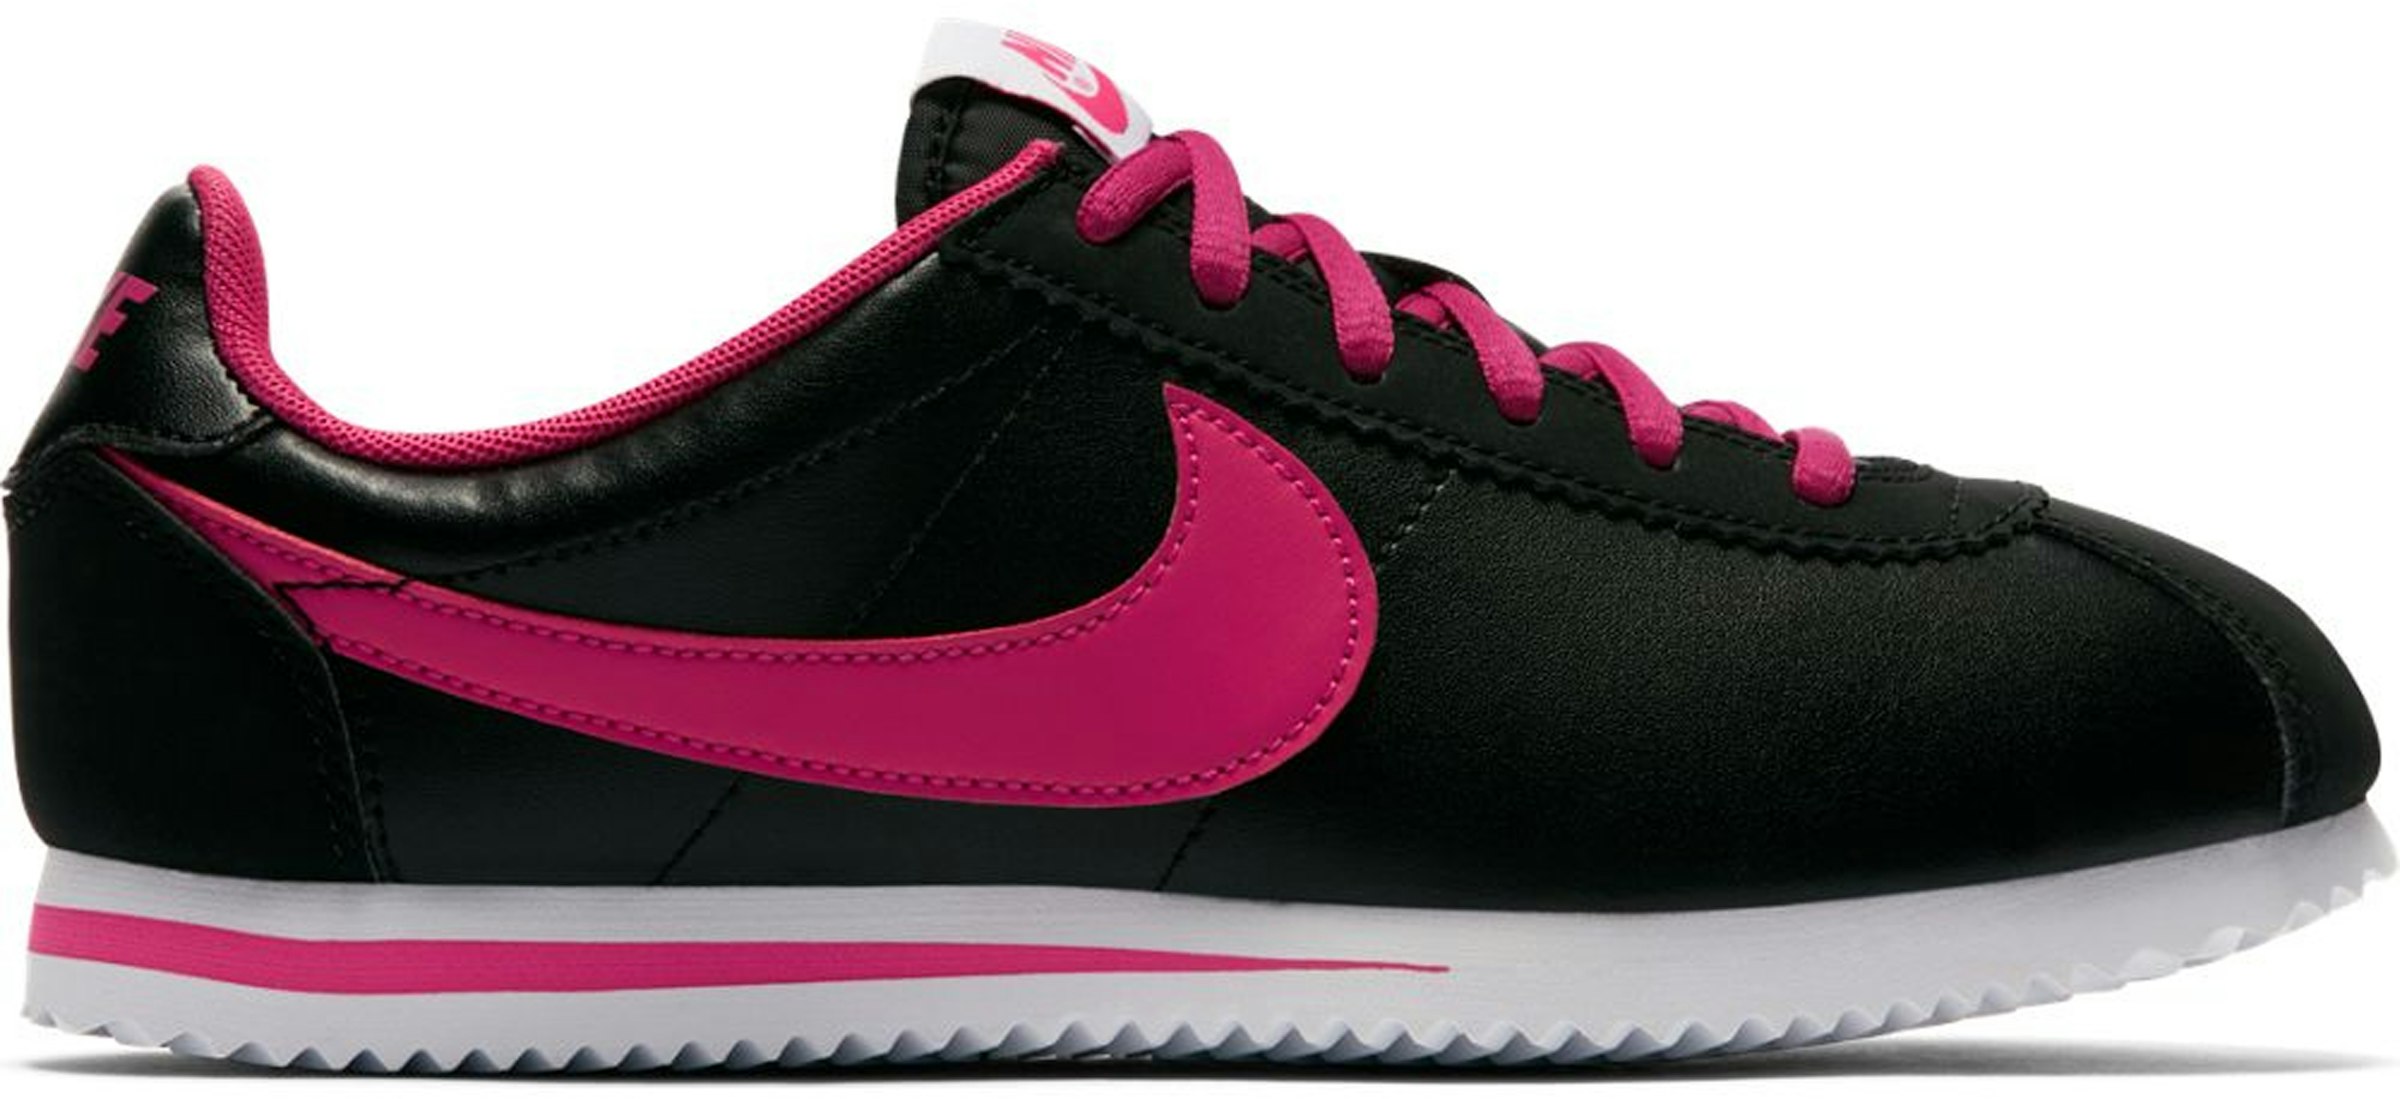 ナイキ GS コルテッツ ビビッド ピンク" Nike Cortez "Black Vivid Pink (GS)" キッズ - 749502-001 - JP